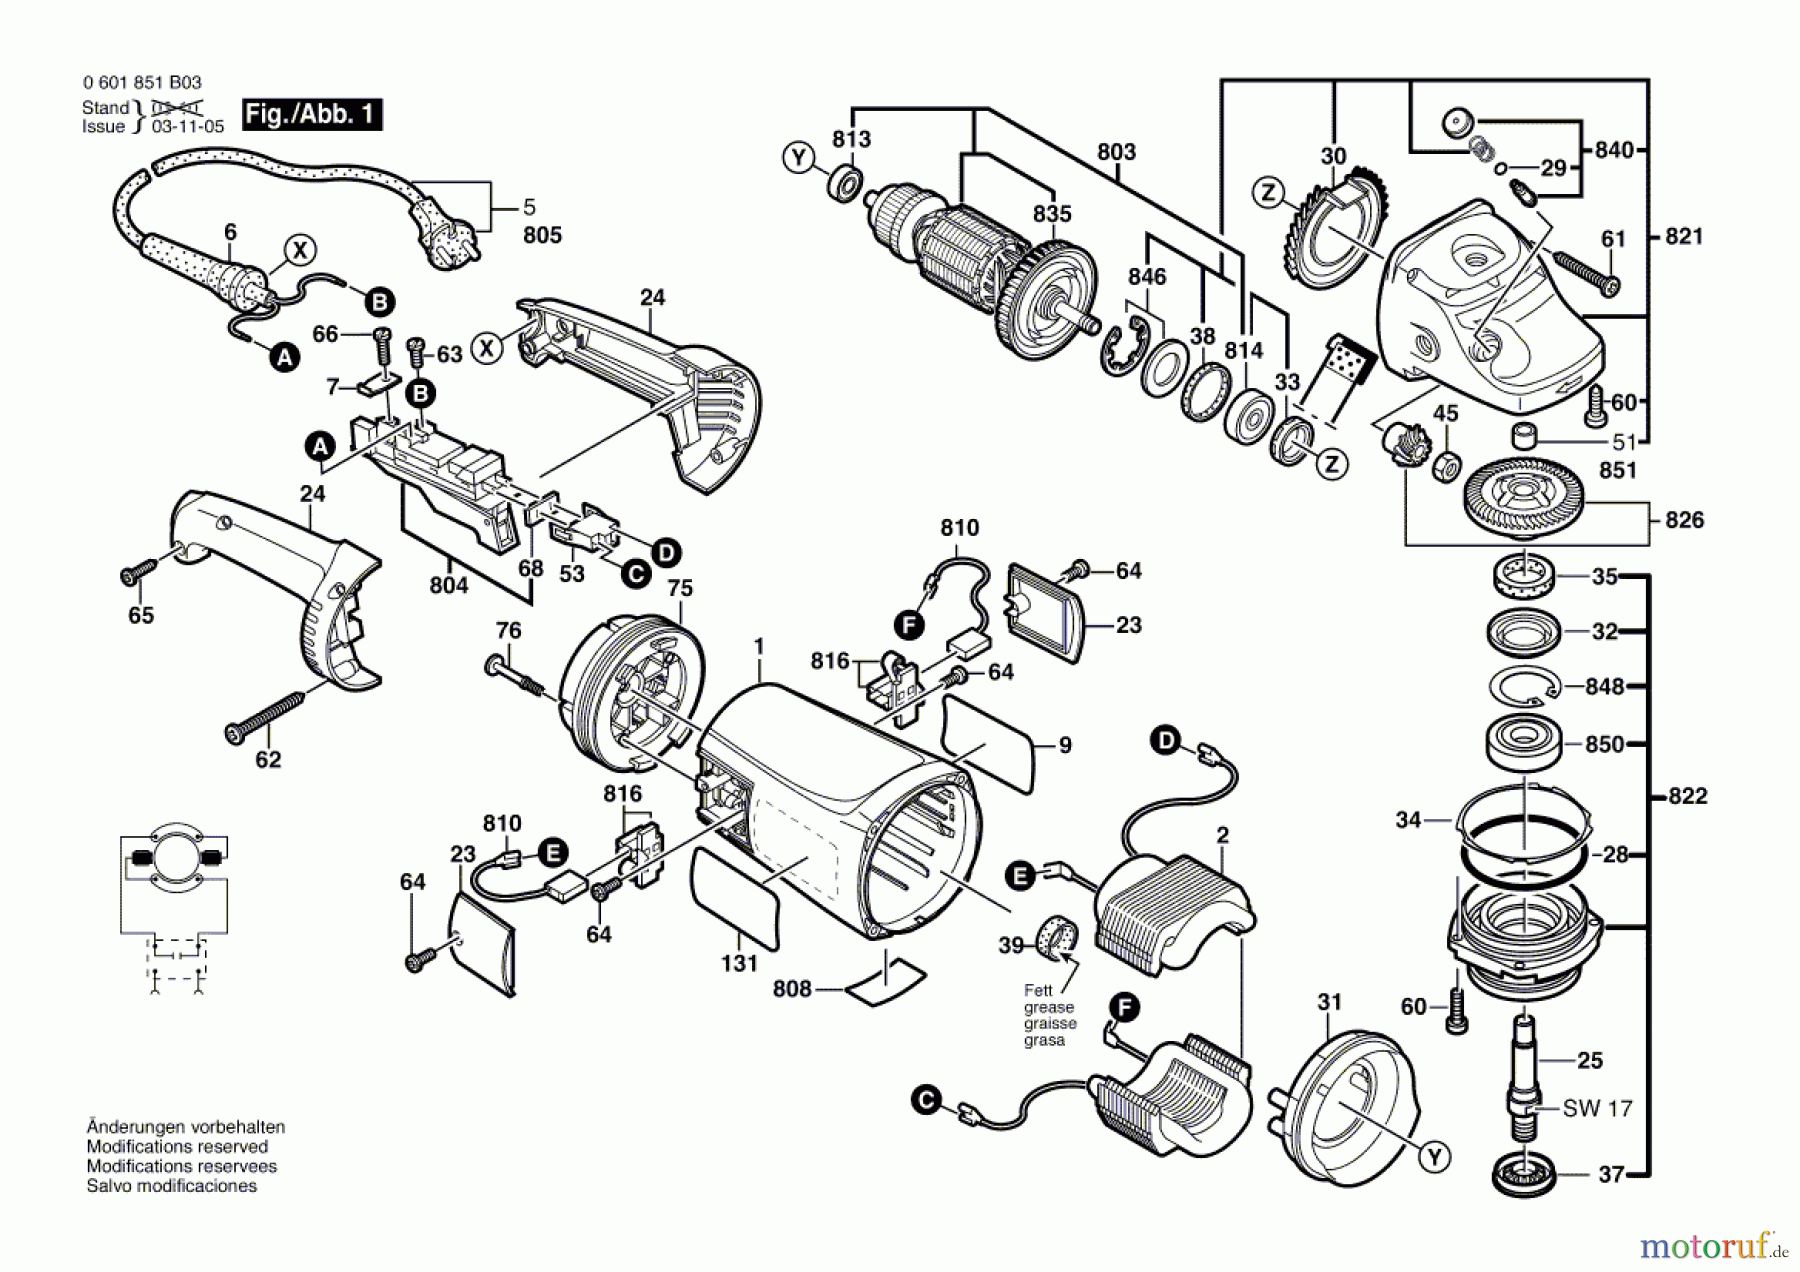  Bosch Werkzeug Winkelschleifer GWS 21-180 HV Seite 1